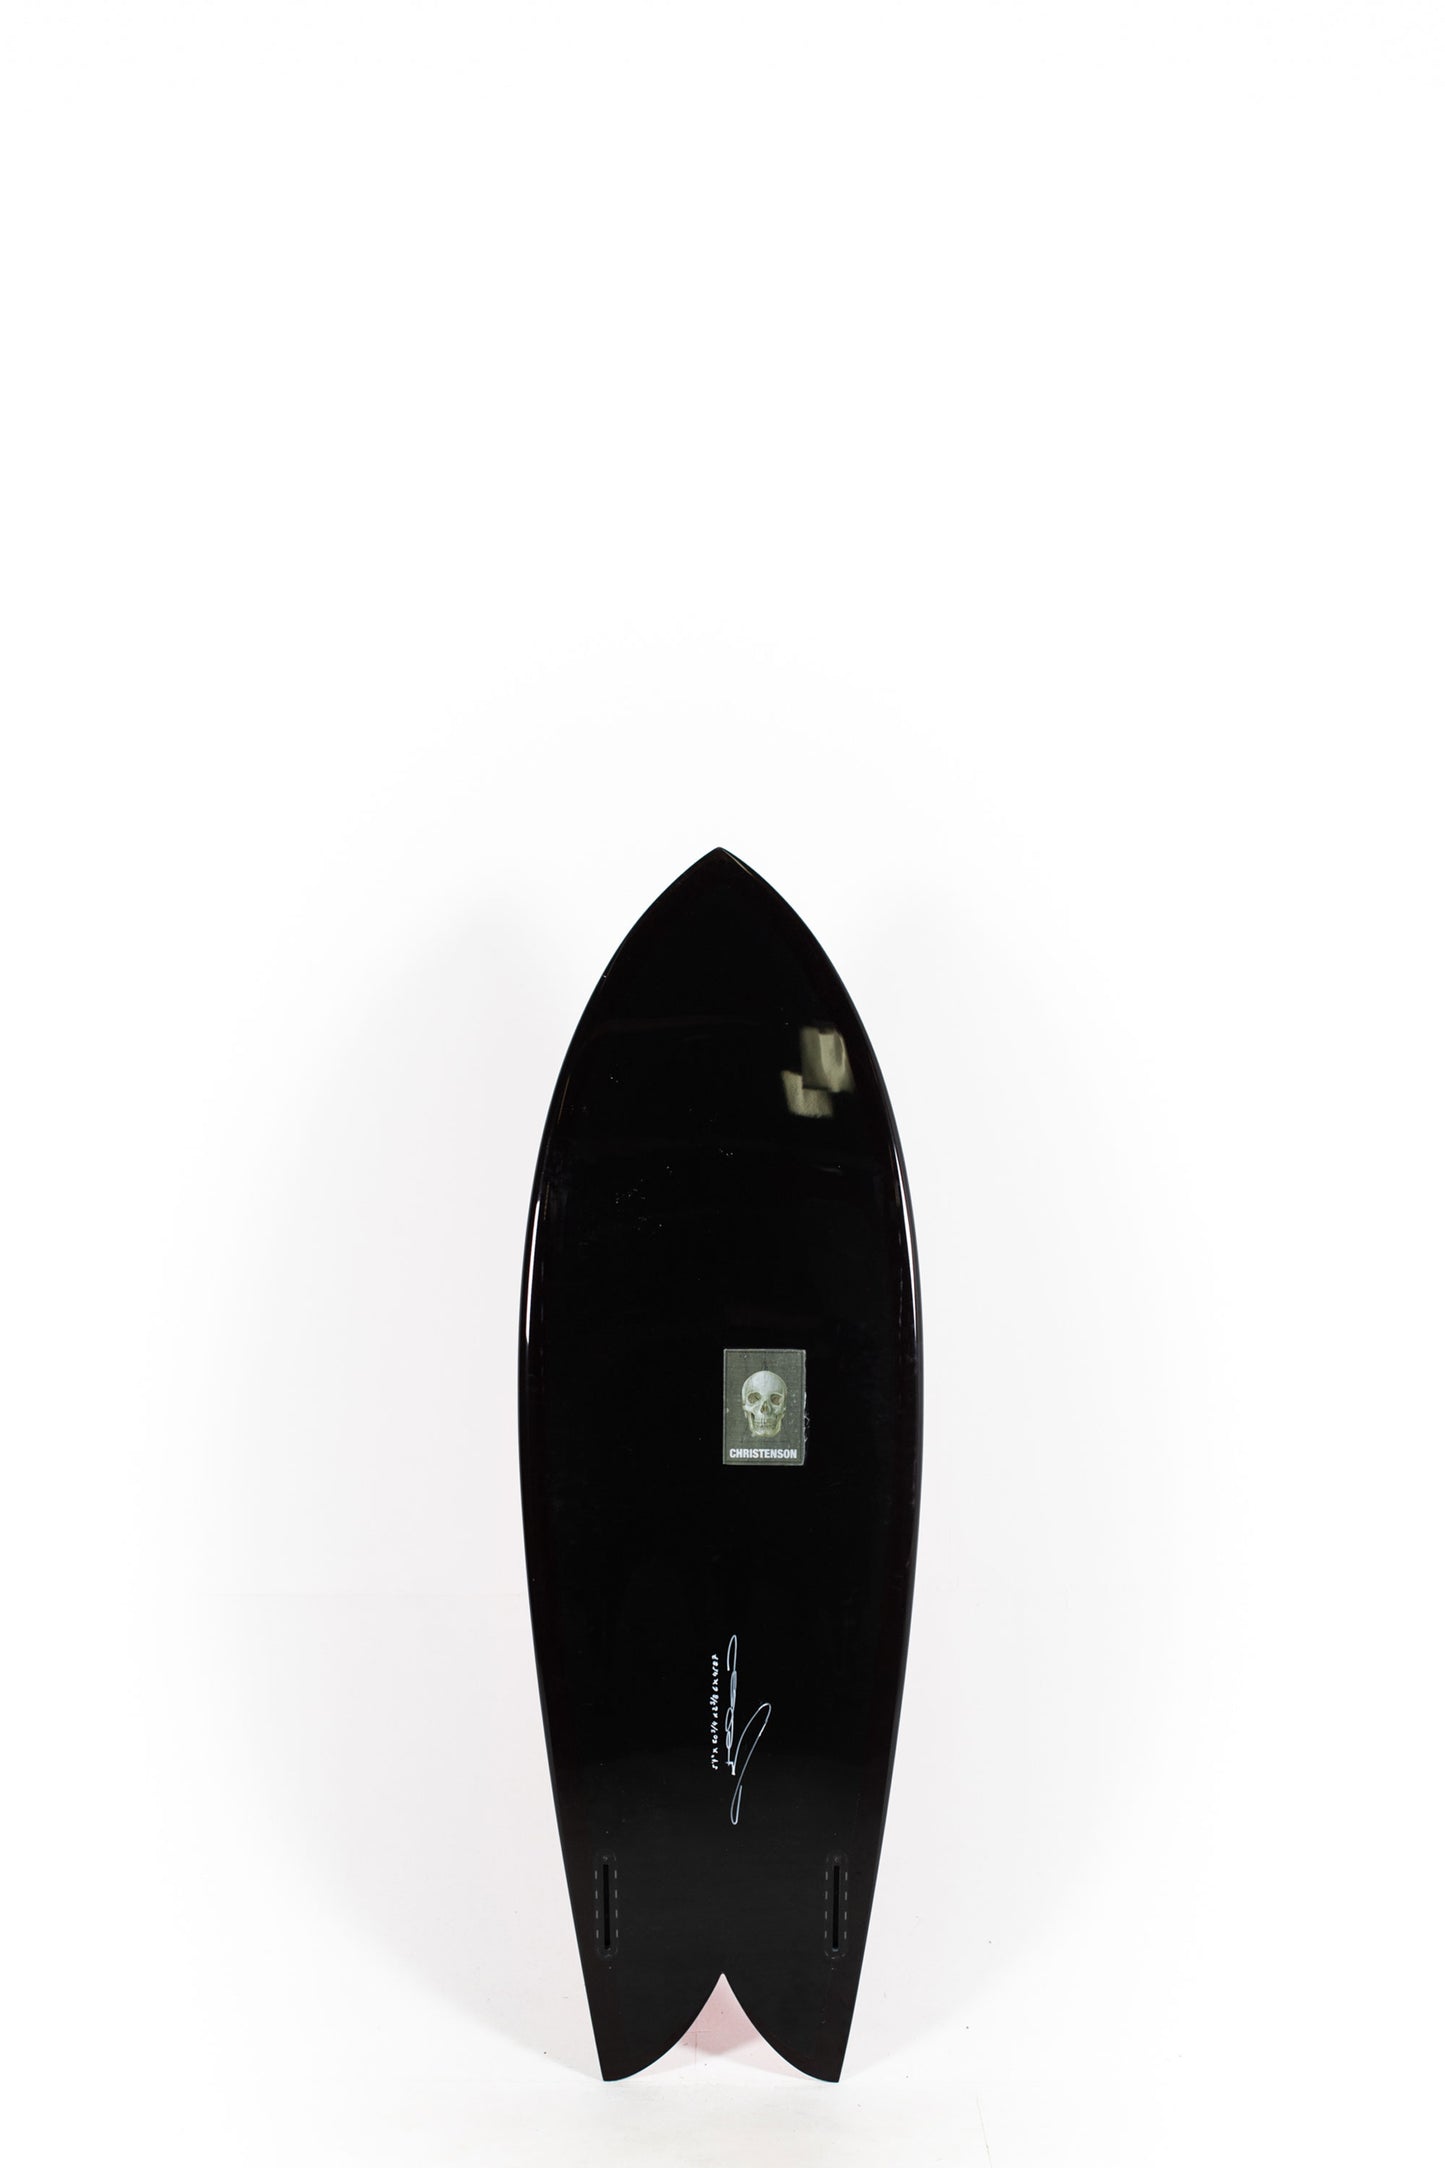 Pukas Surf Shop - Christenson Surfboards - CHRIS FISH - 5'4" x 20 3/4 x 2 3/8 -CX04587